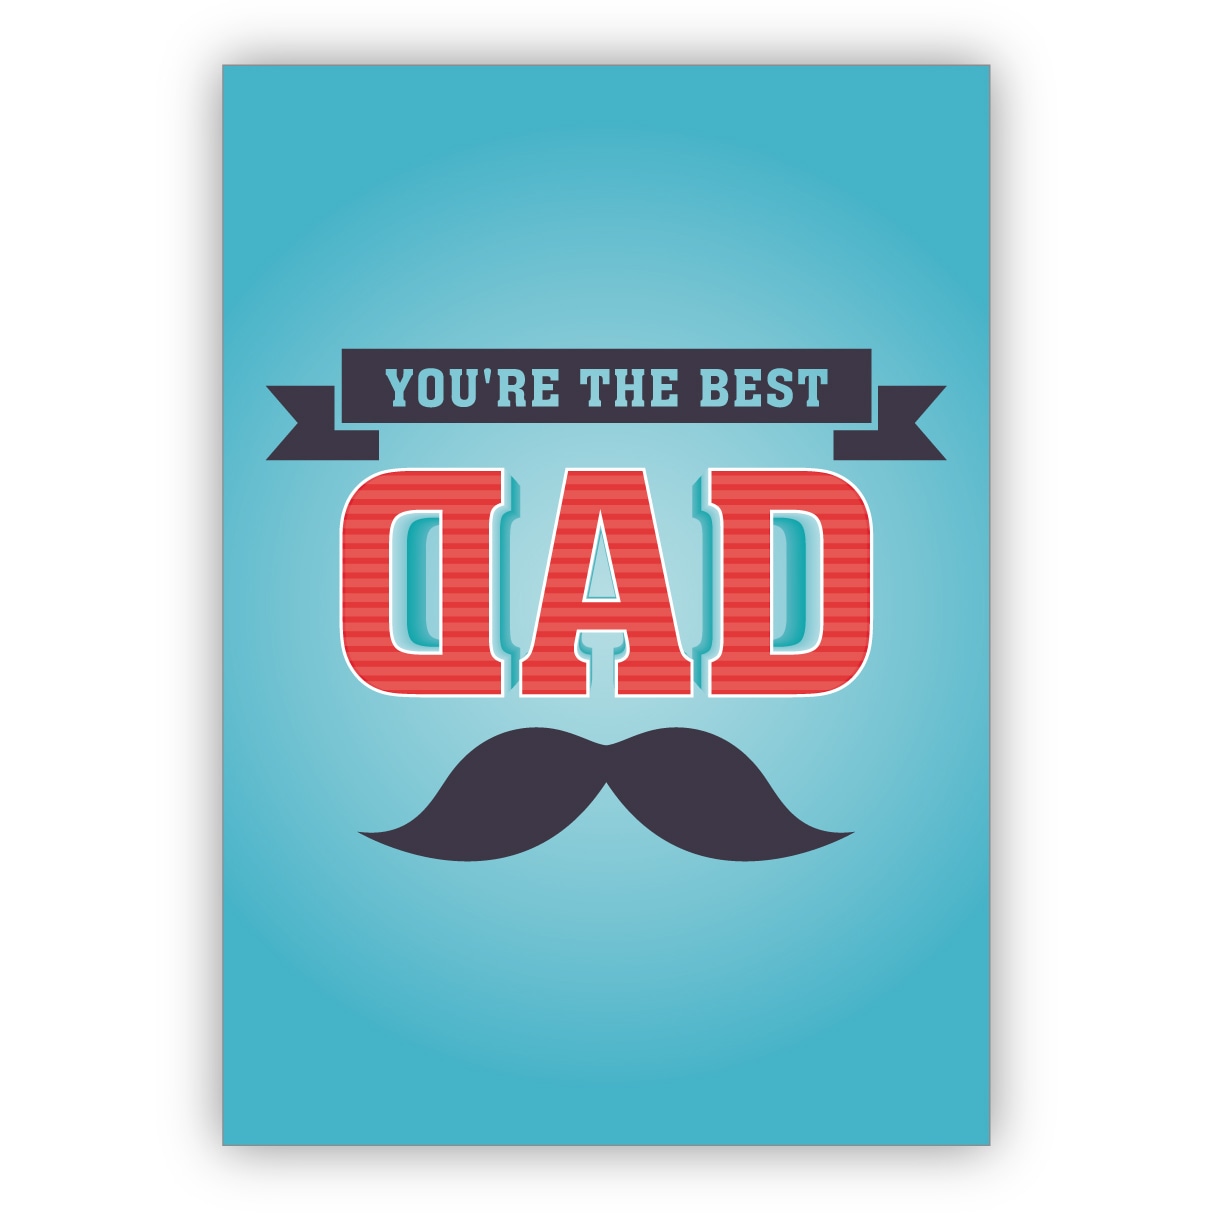 Lobende Grußkarte für Pappi, Vati, Vater - ob zum Vatertag, Geburtstag oder Weihnachten: you're the best dad.